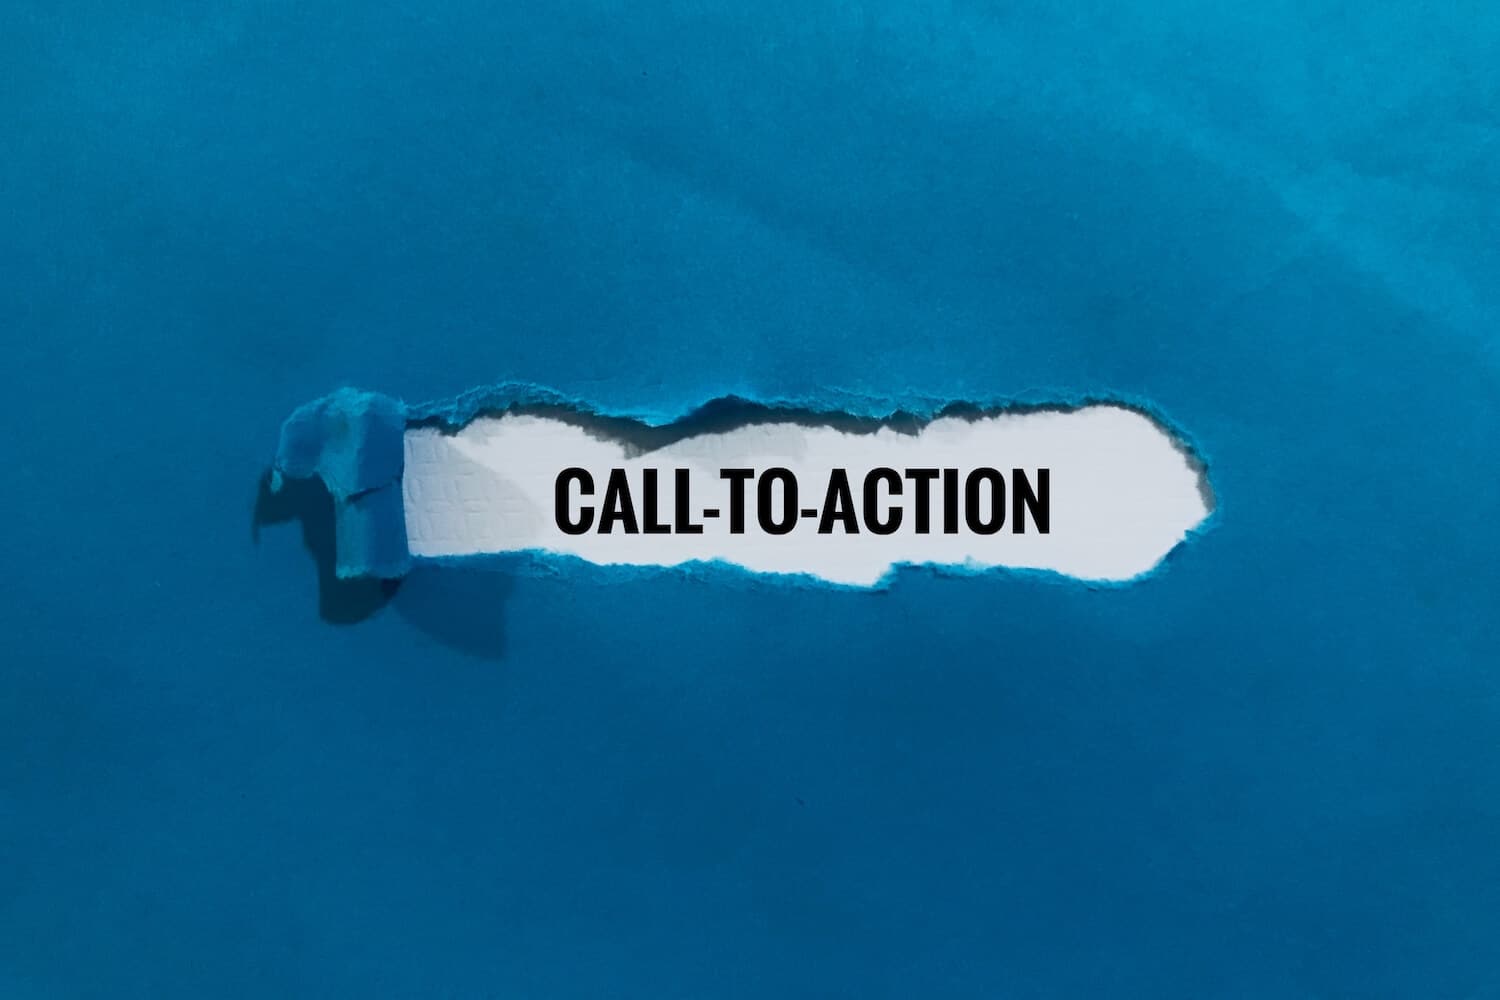 Der Schriftzug "Call-to-Action" auf einem blauen Hintergrund.